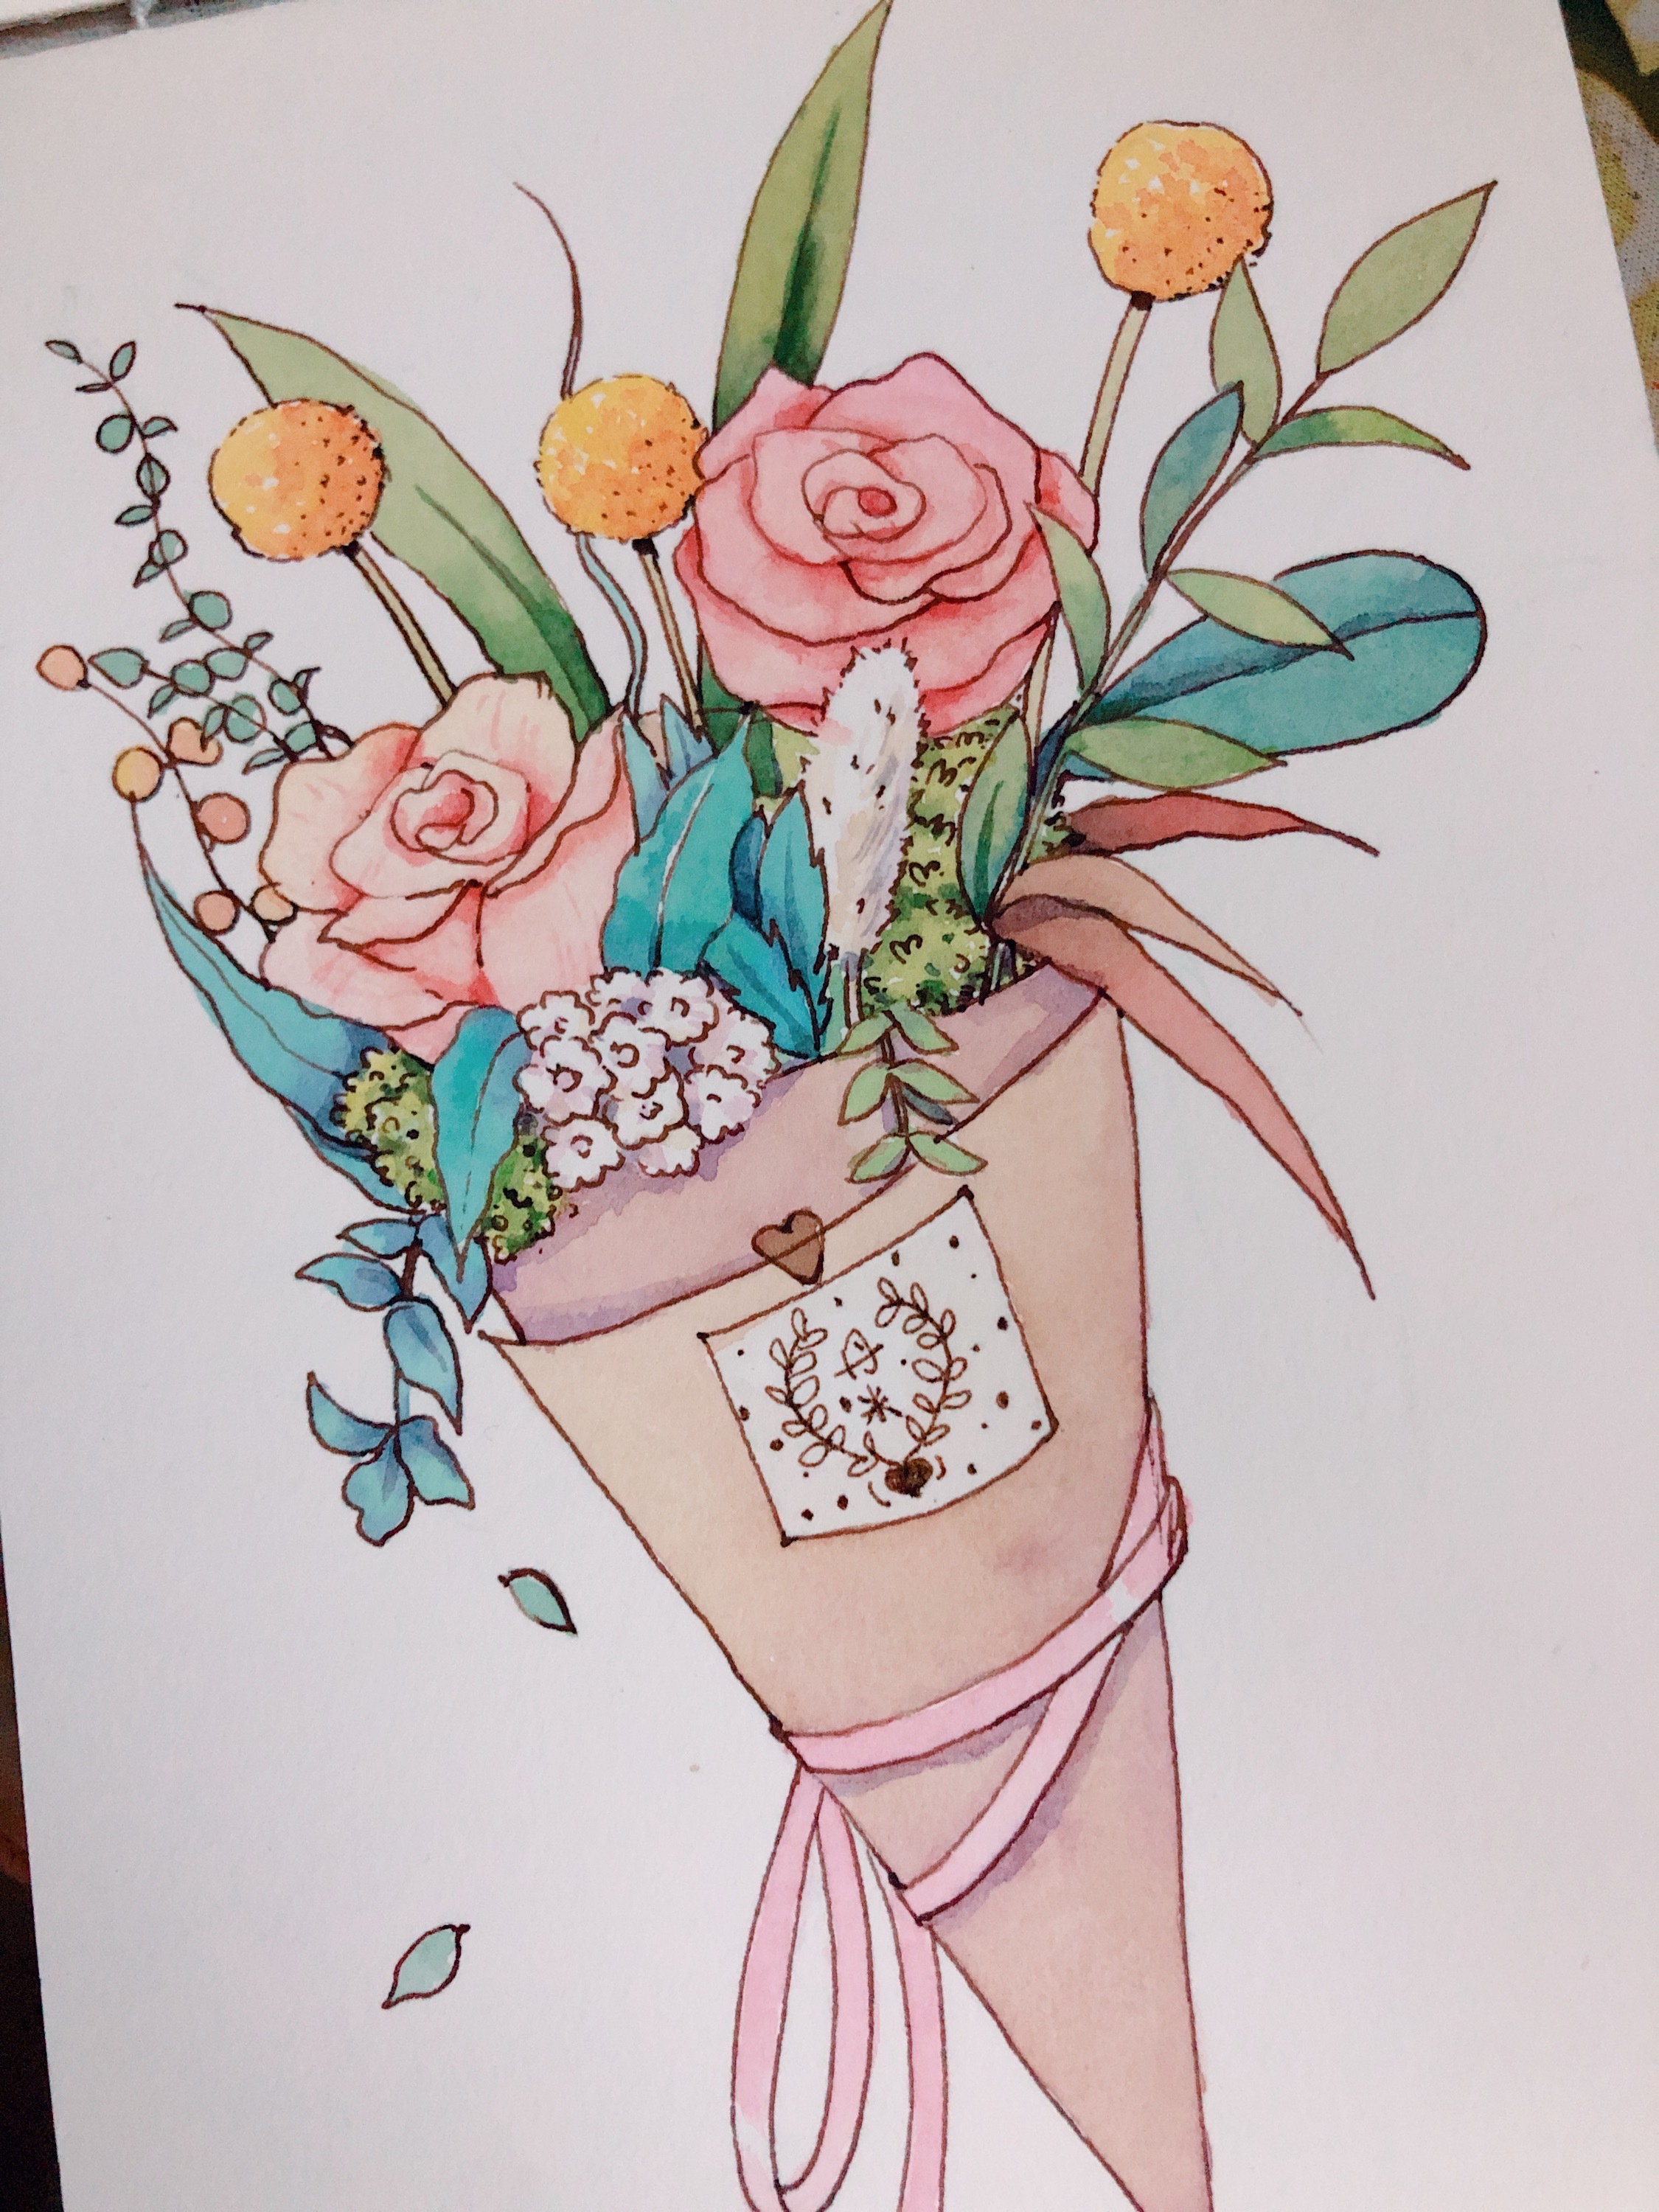 手绘植物花卉花束图片素材免费下载 - 觅知网